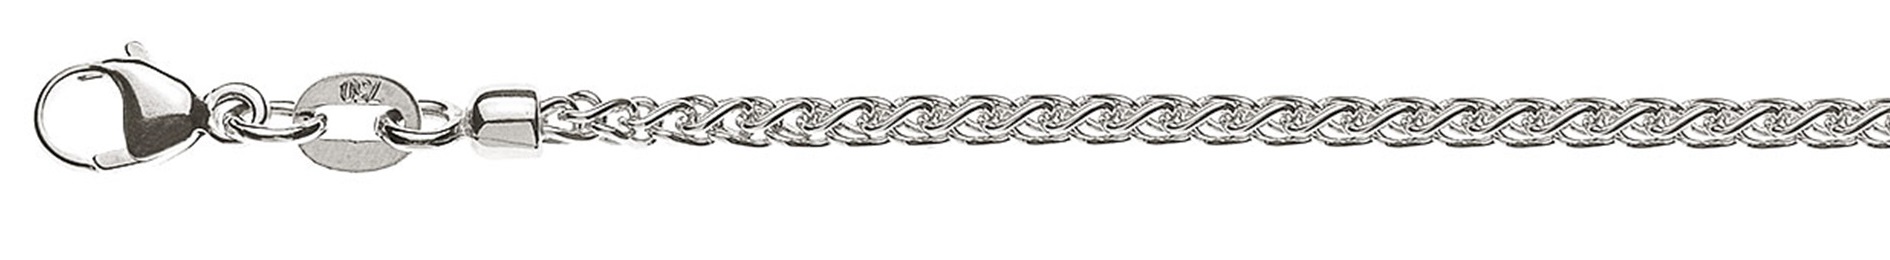 AURONOS Prestige Necklace white gold 18K cable chain 55cm 2.15mm